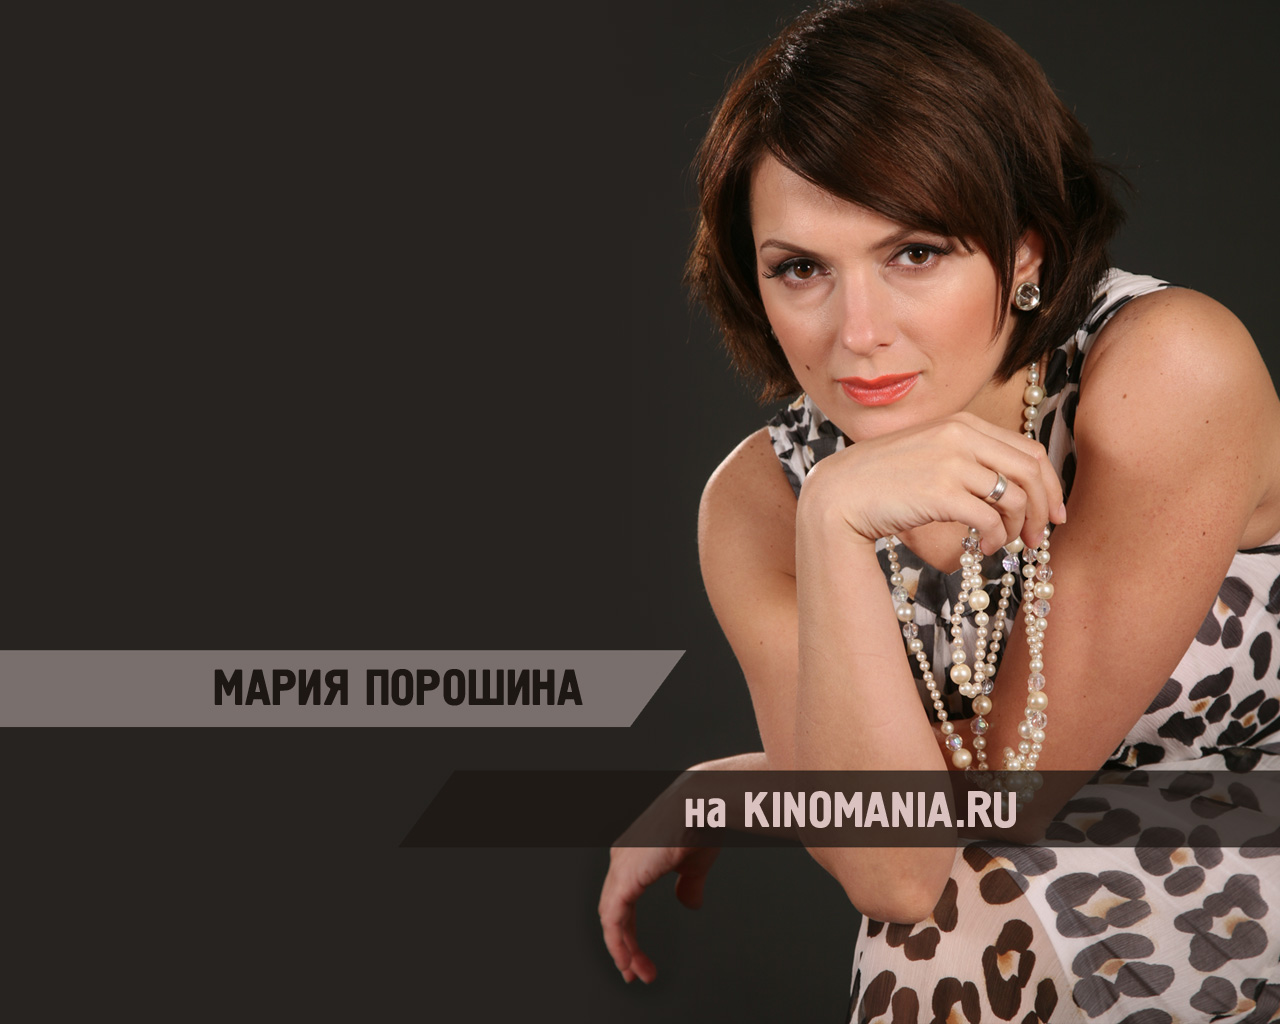 Mariya Poroshina